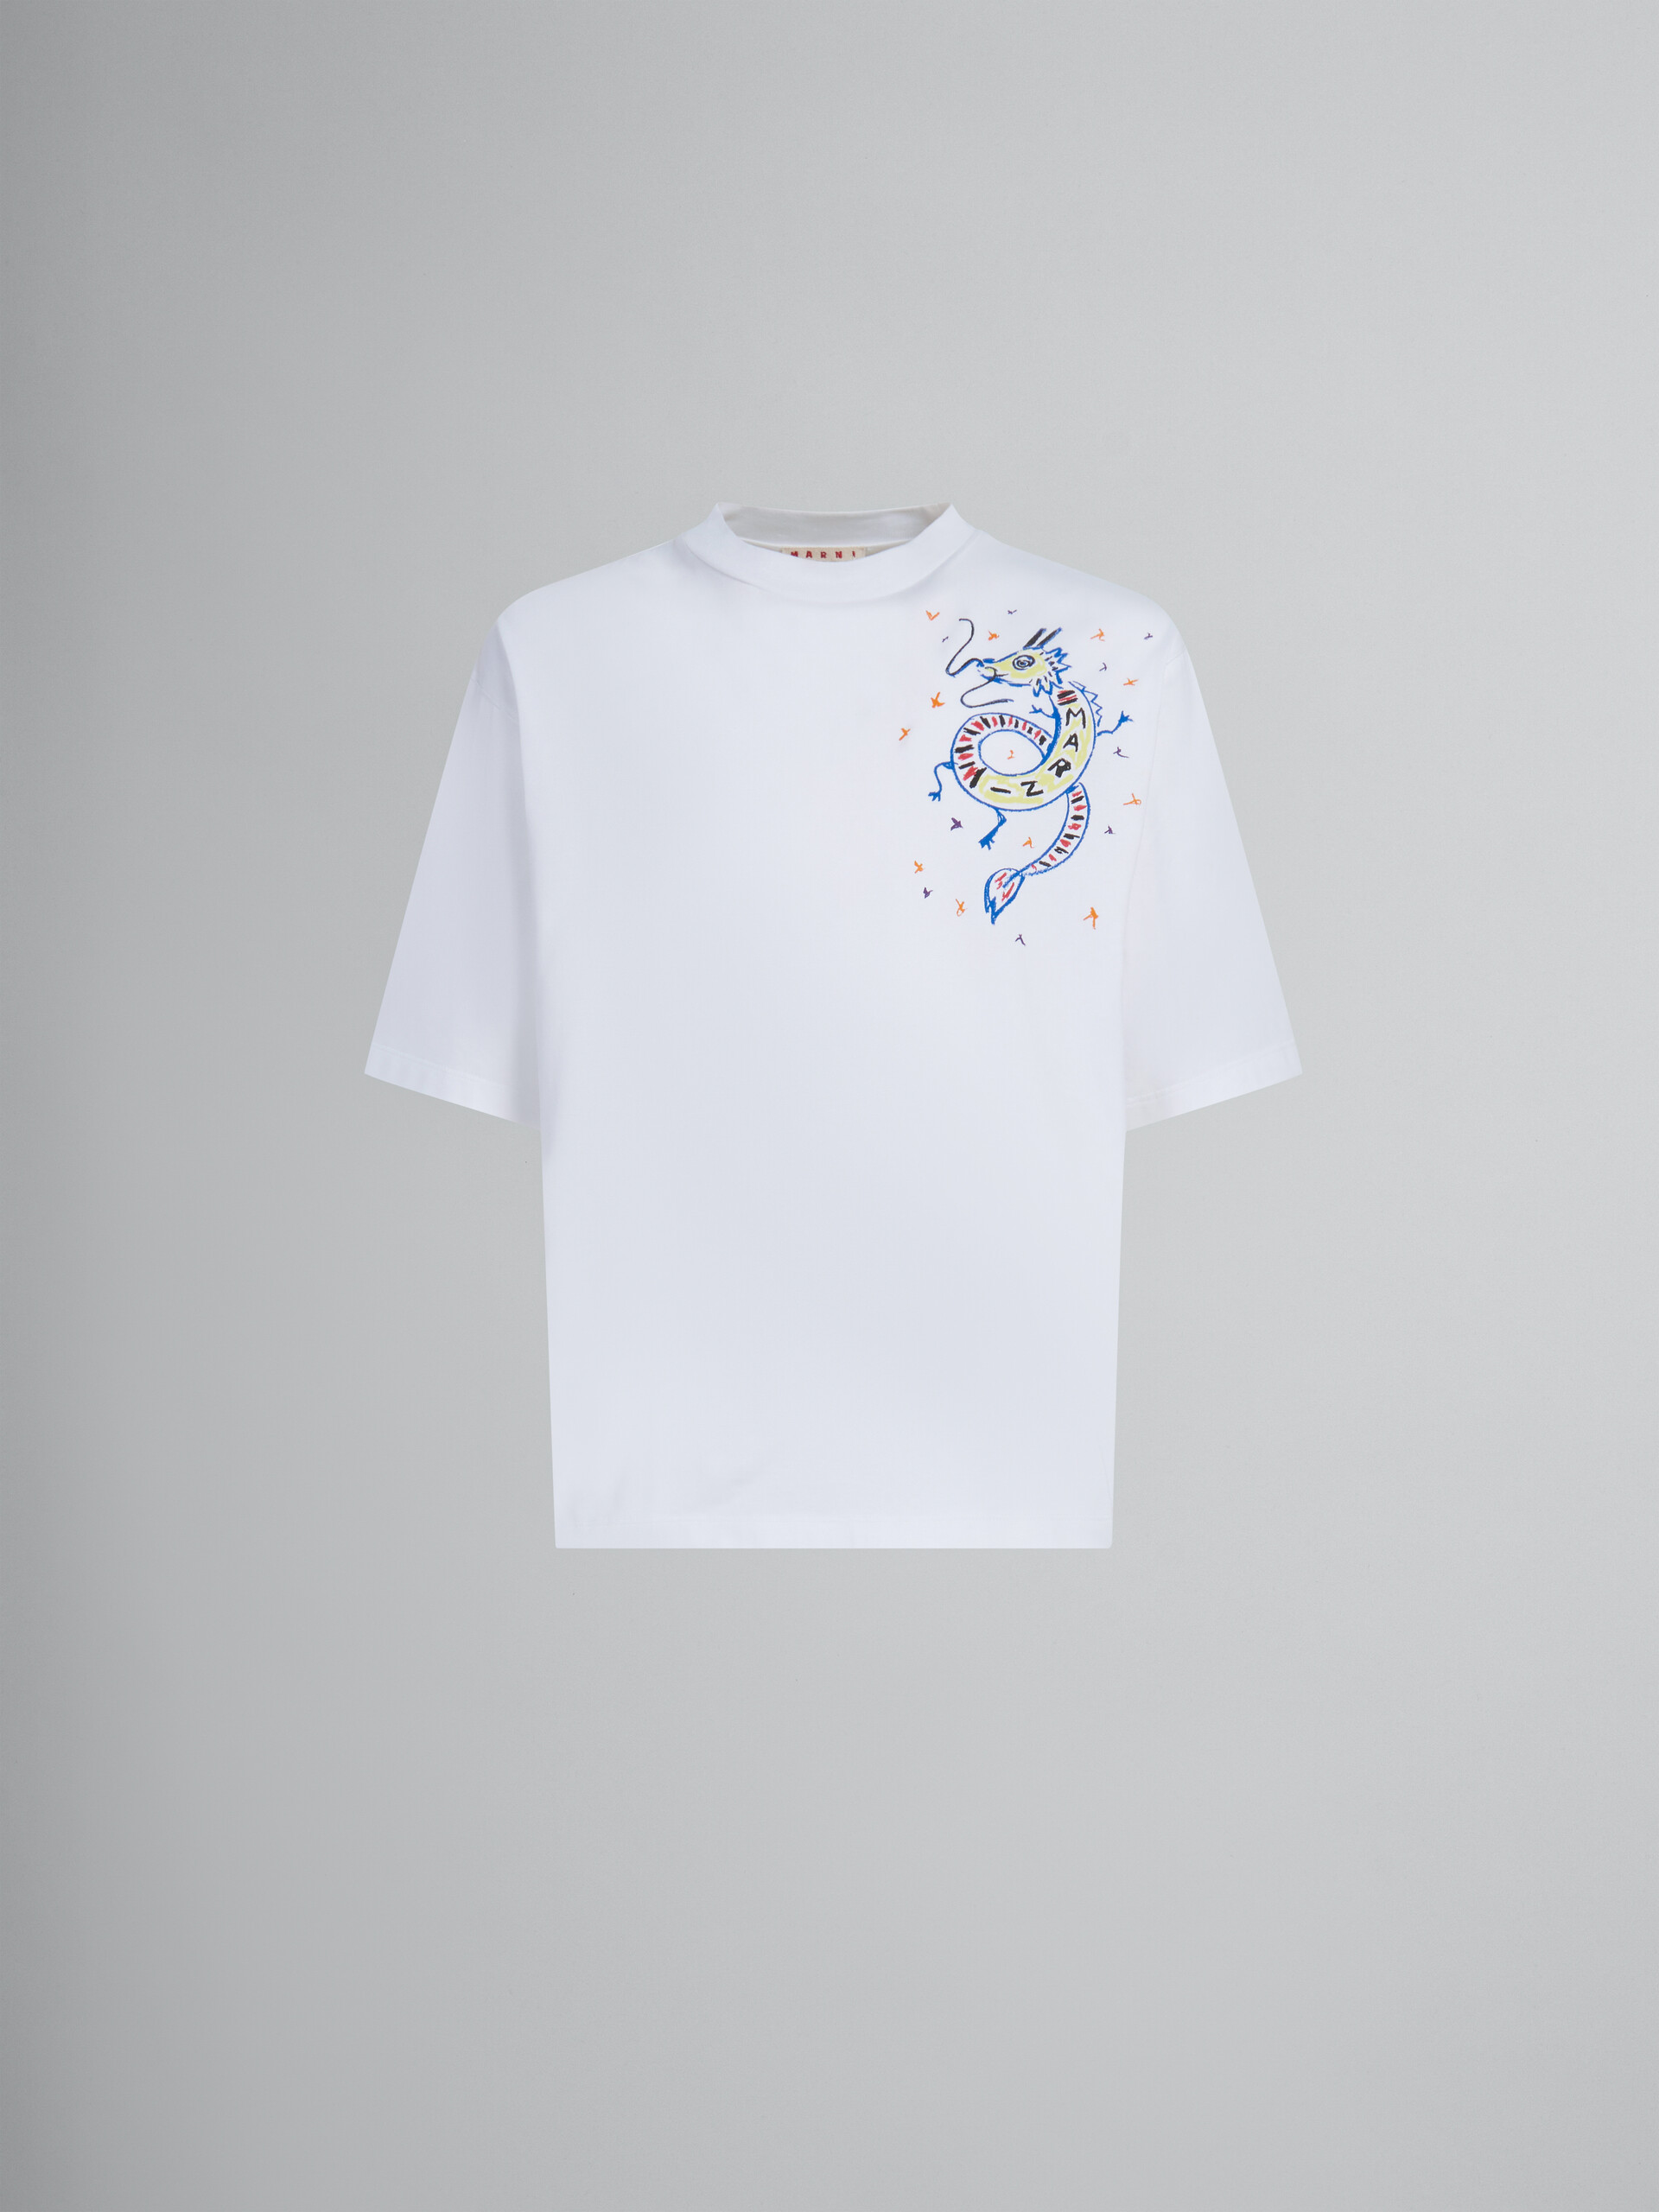 T-shirt en jersey biologique blanc avec imprimé dragon - T-shirts - Image 1